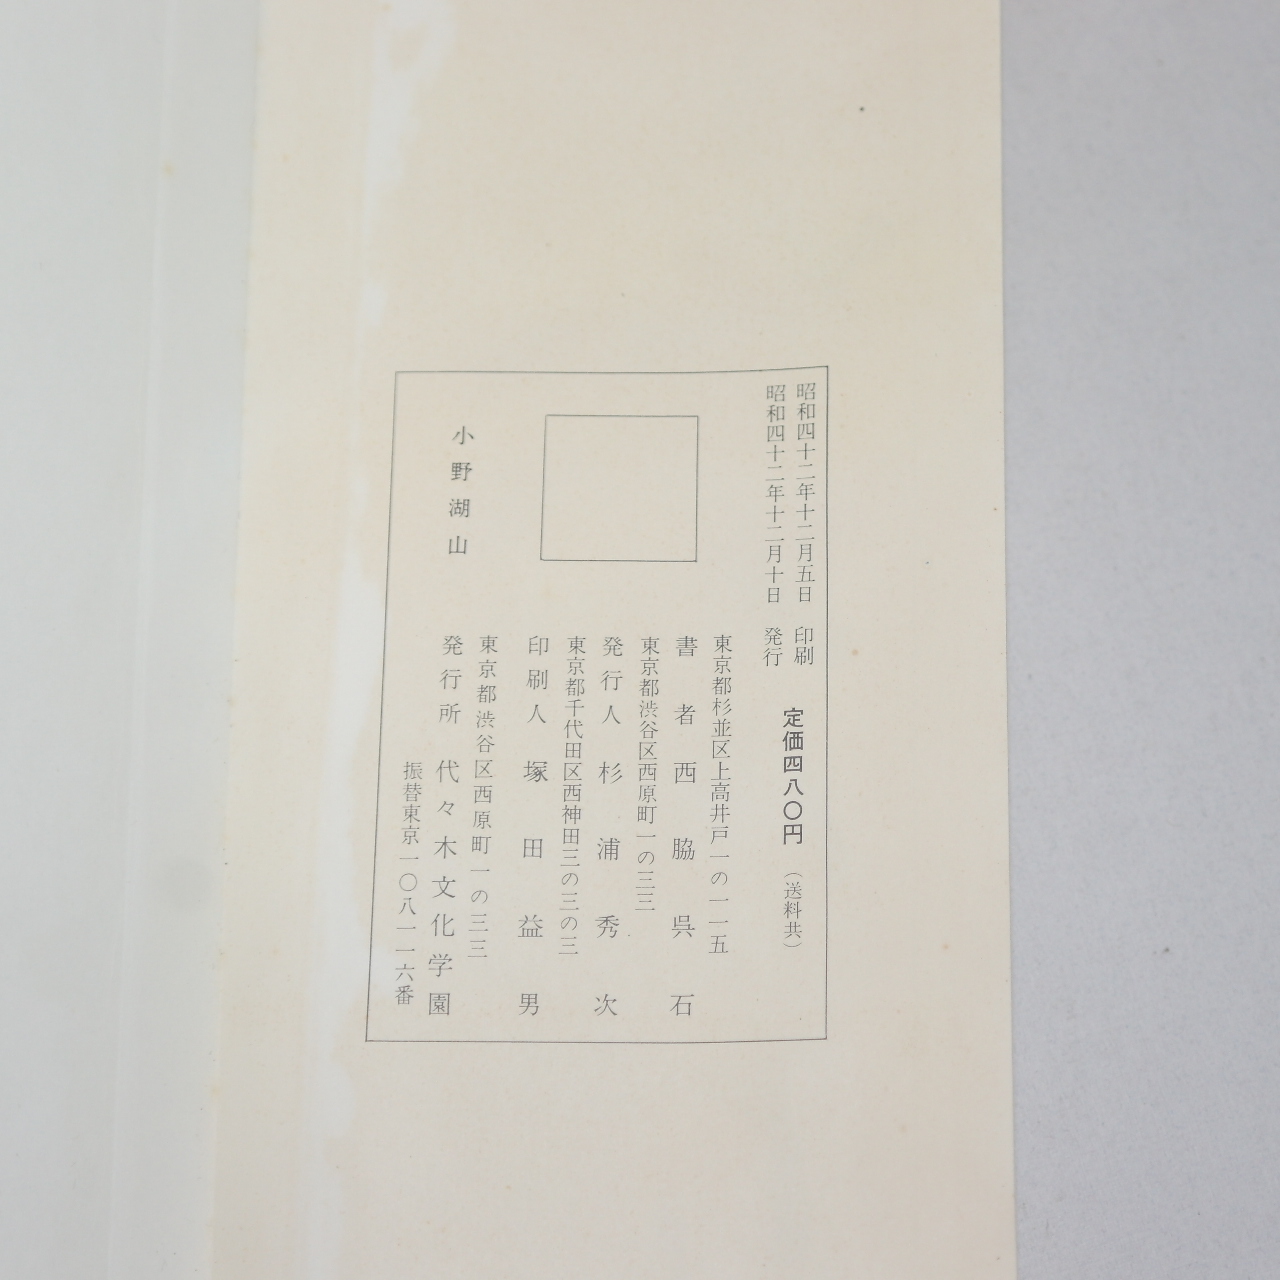 1967년(소화42년) 일본간행 절첩본 임서한서협송(臨書漢西狹頌)